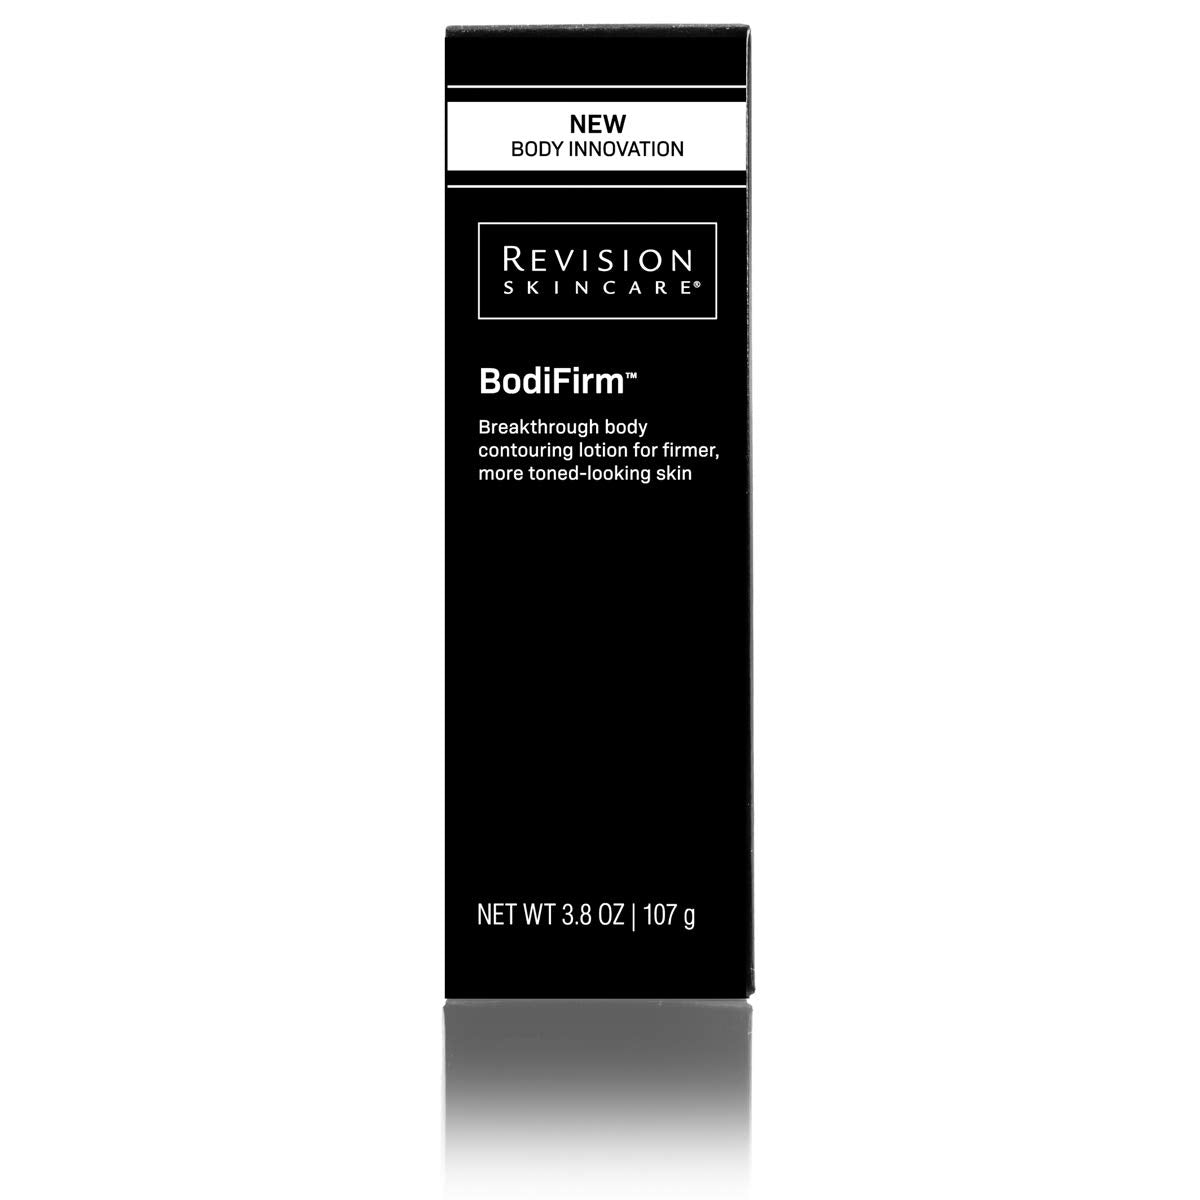 Revision Skincare BodiFirm box